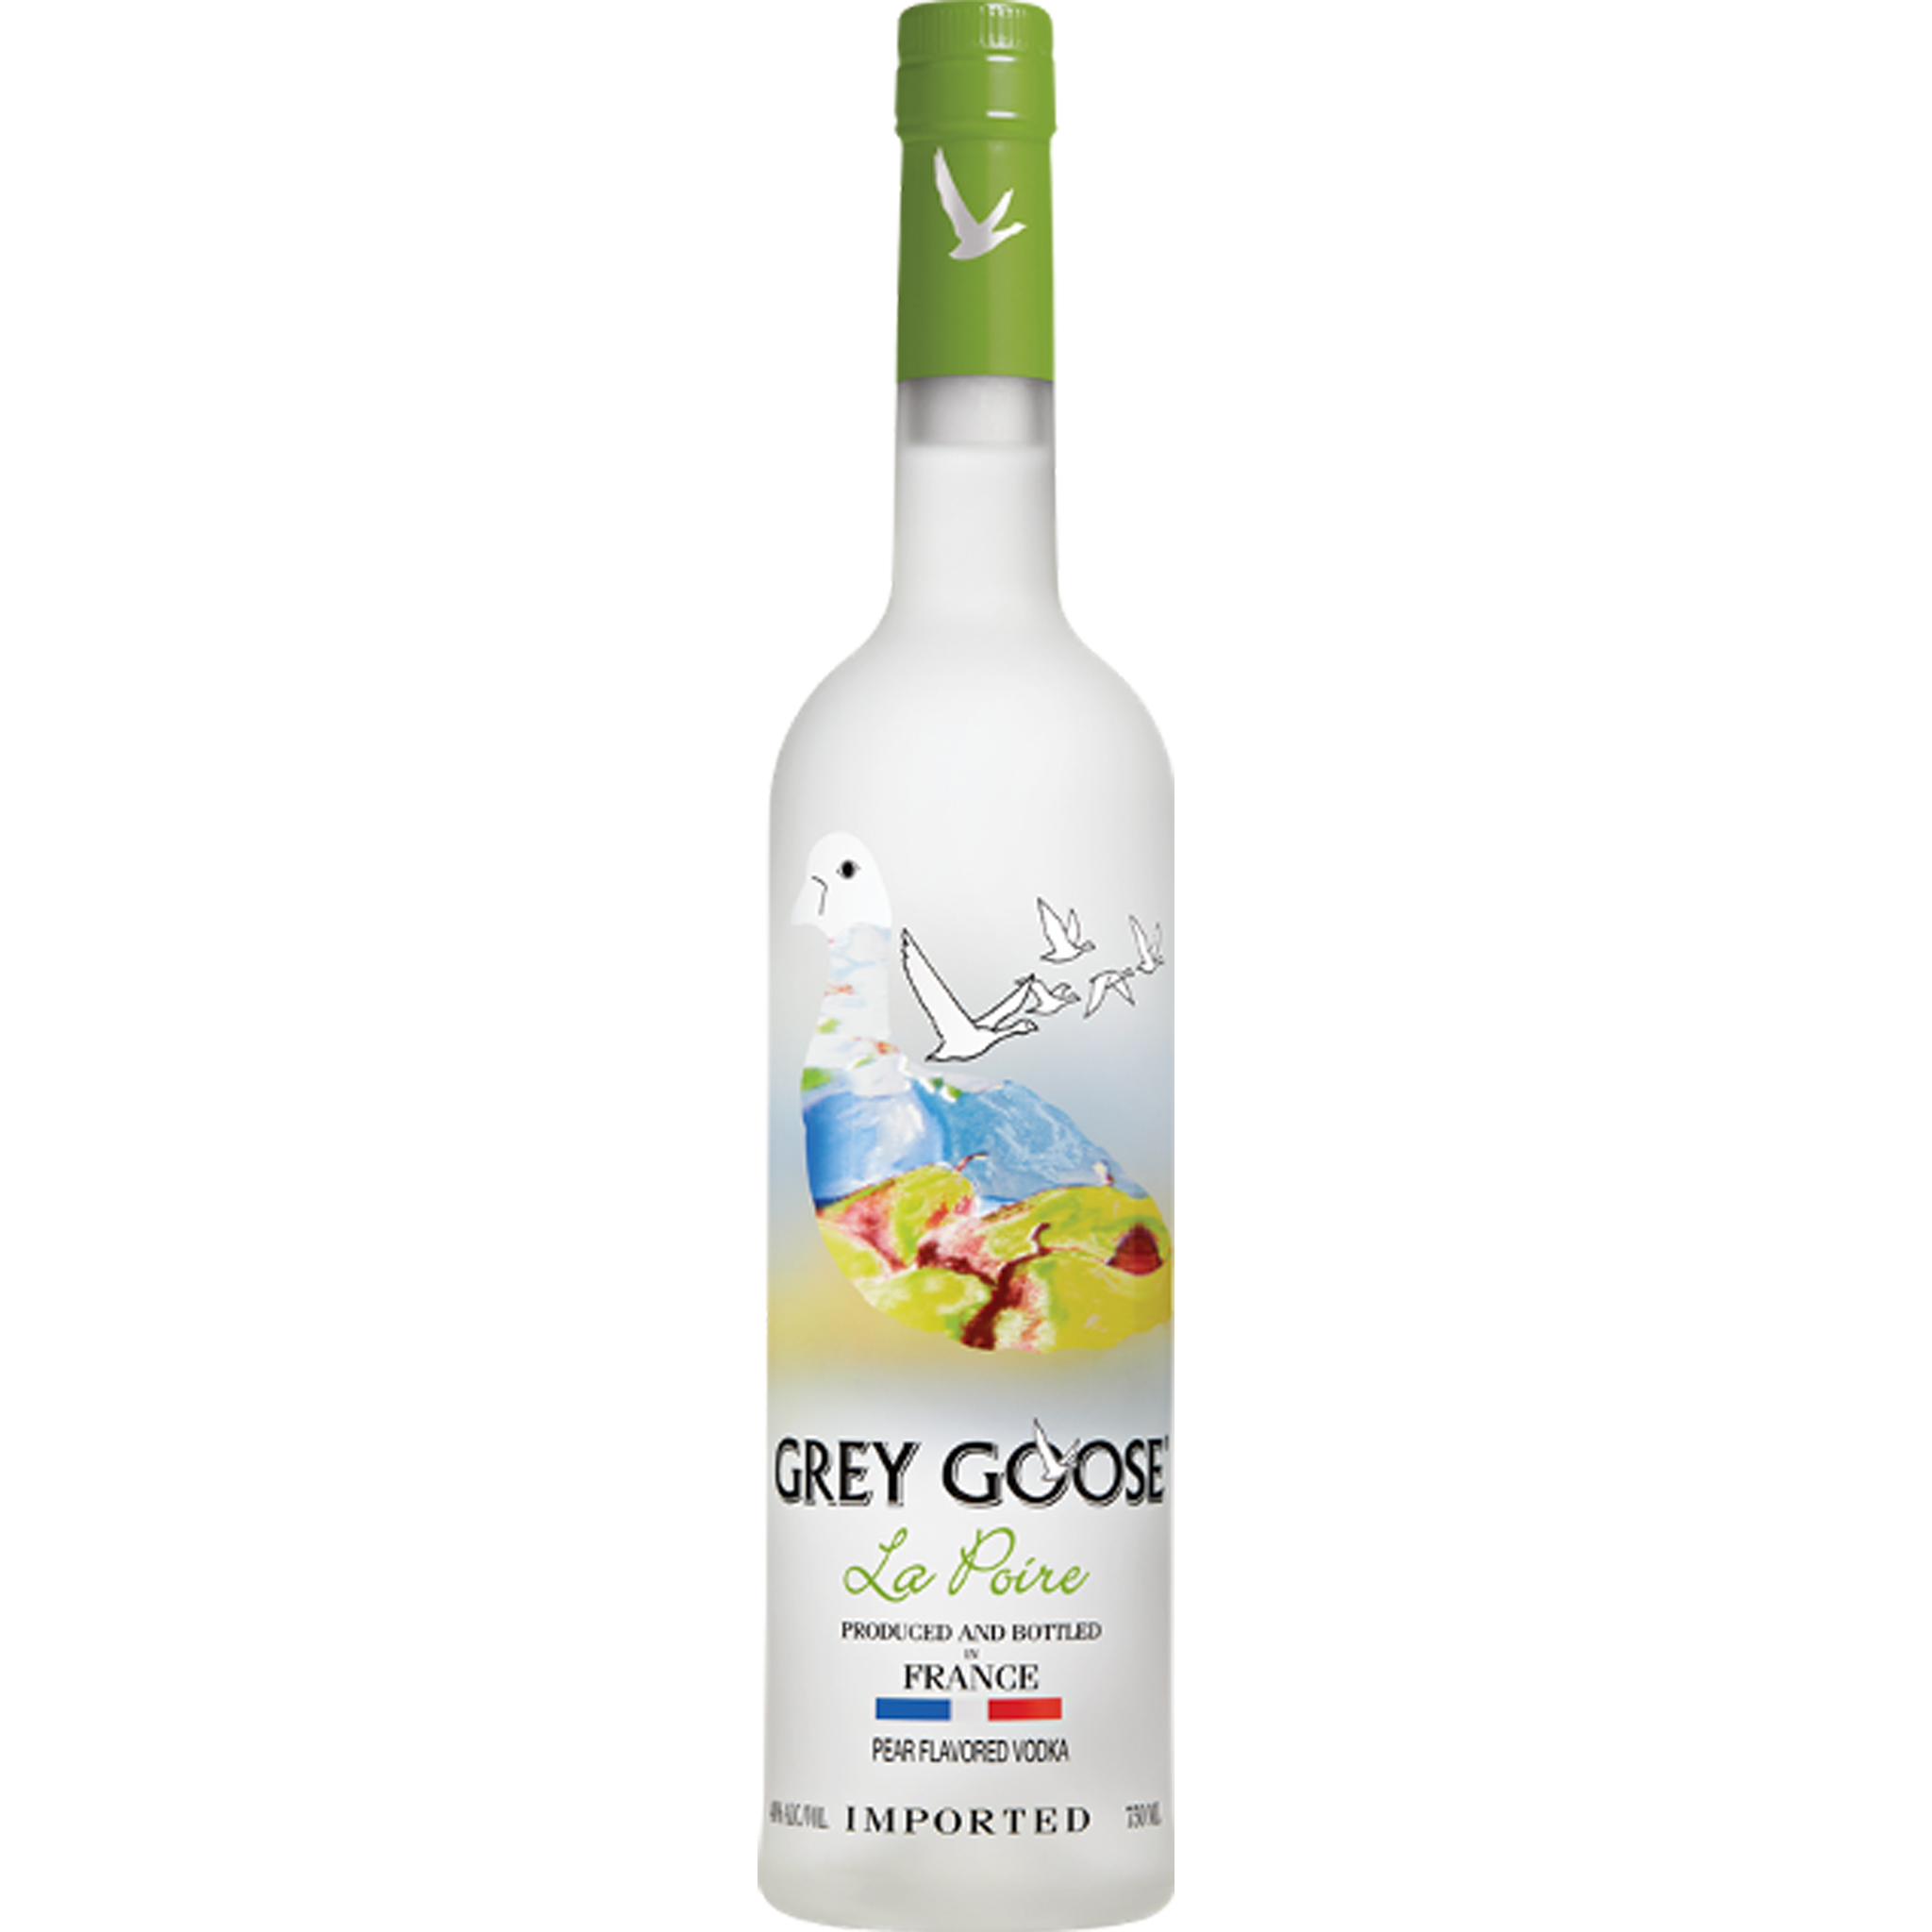 Grey Goose Le Poire Vodka